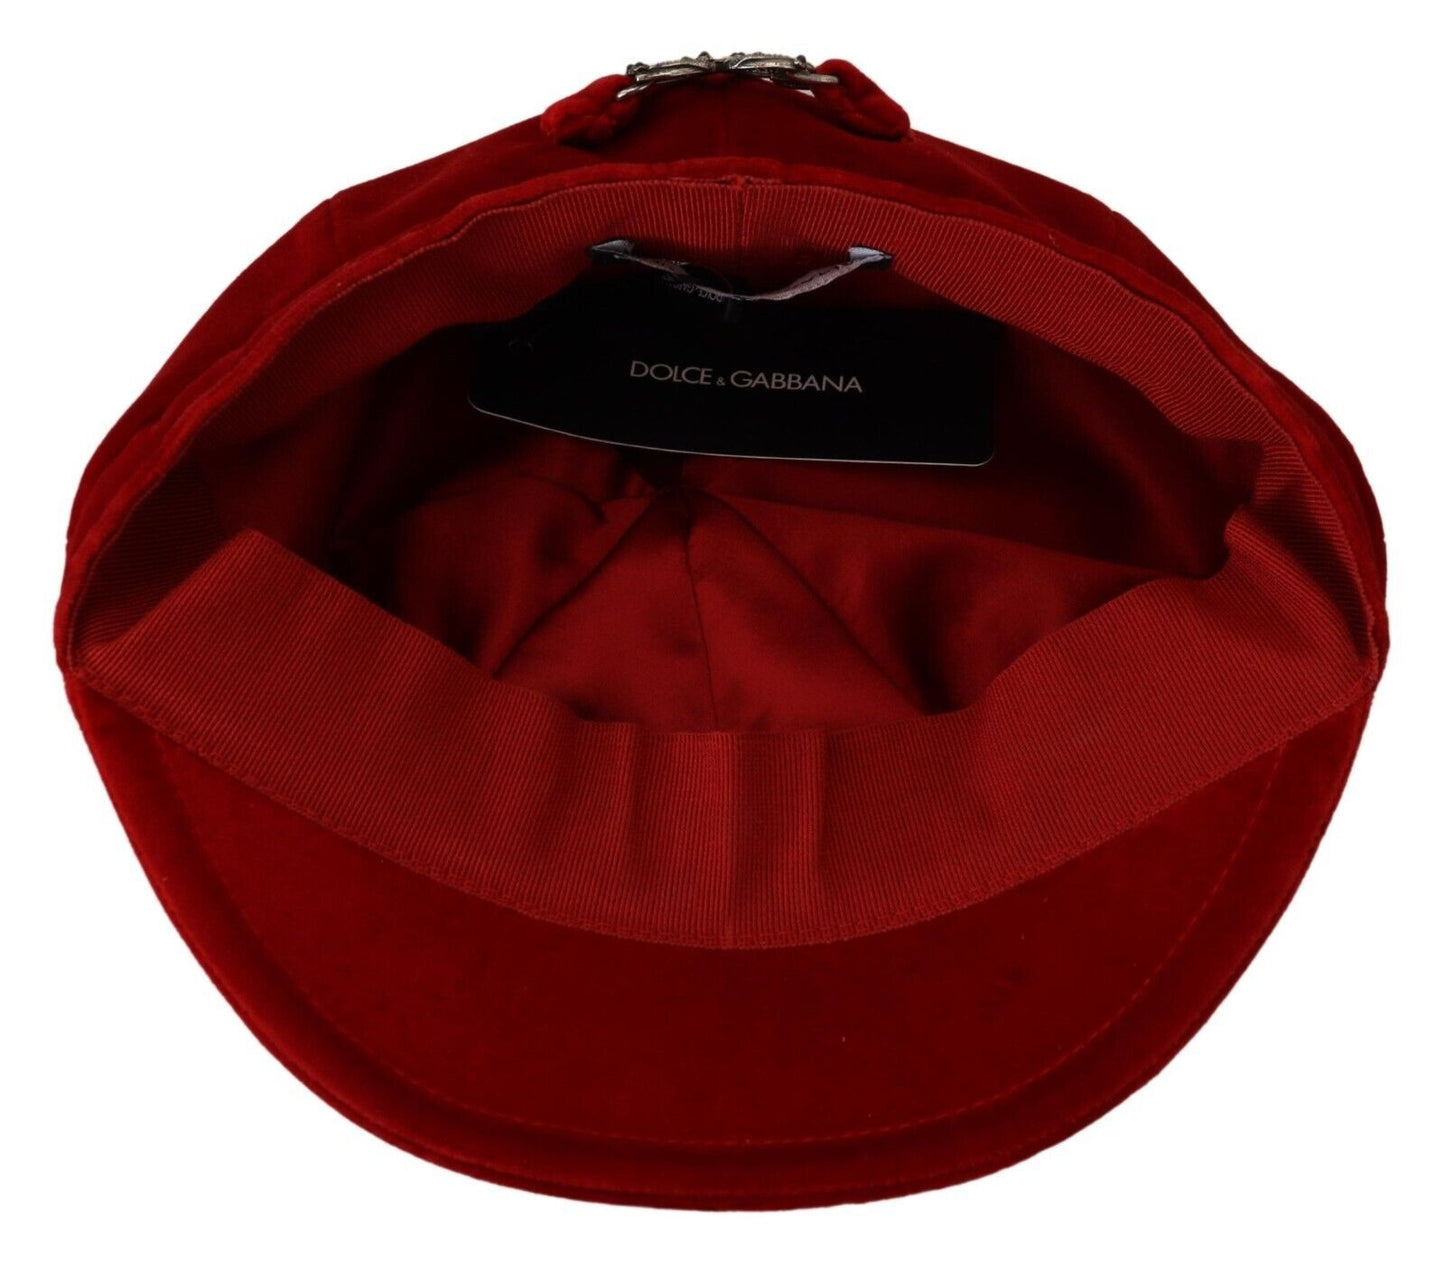 Elegant Red Cabbie Hat